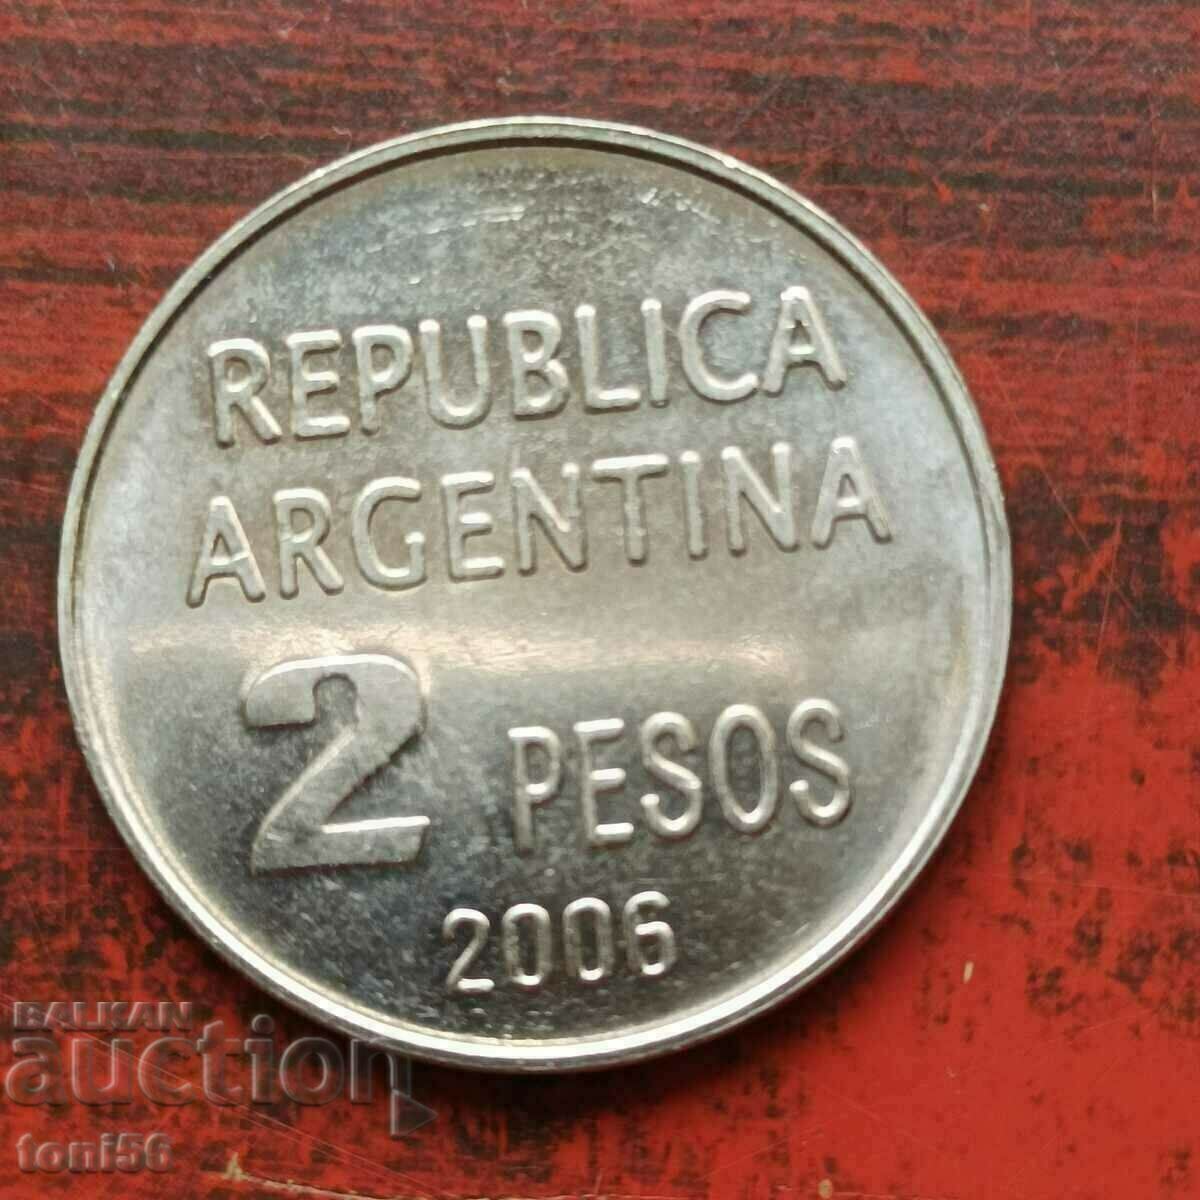 Argentina 2 pesos 2006 UNC commemorative